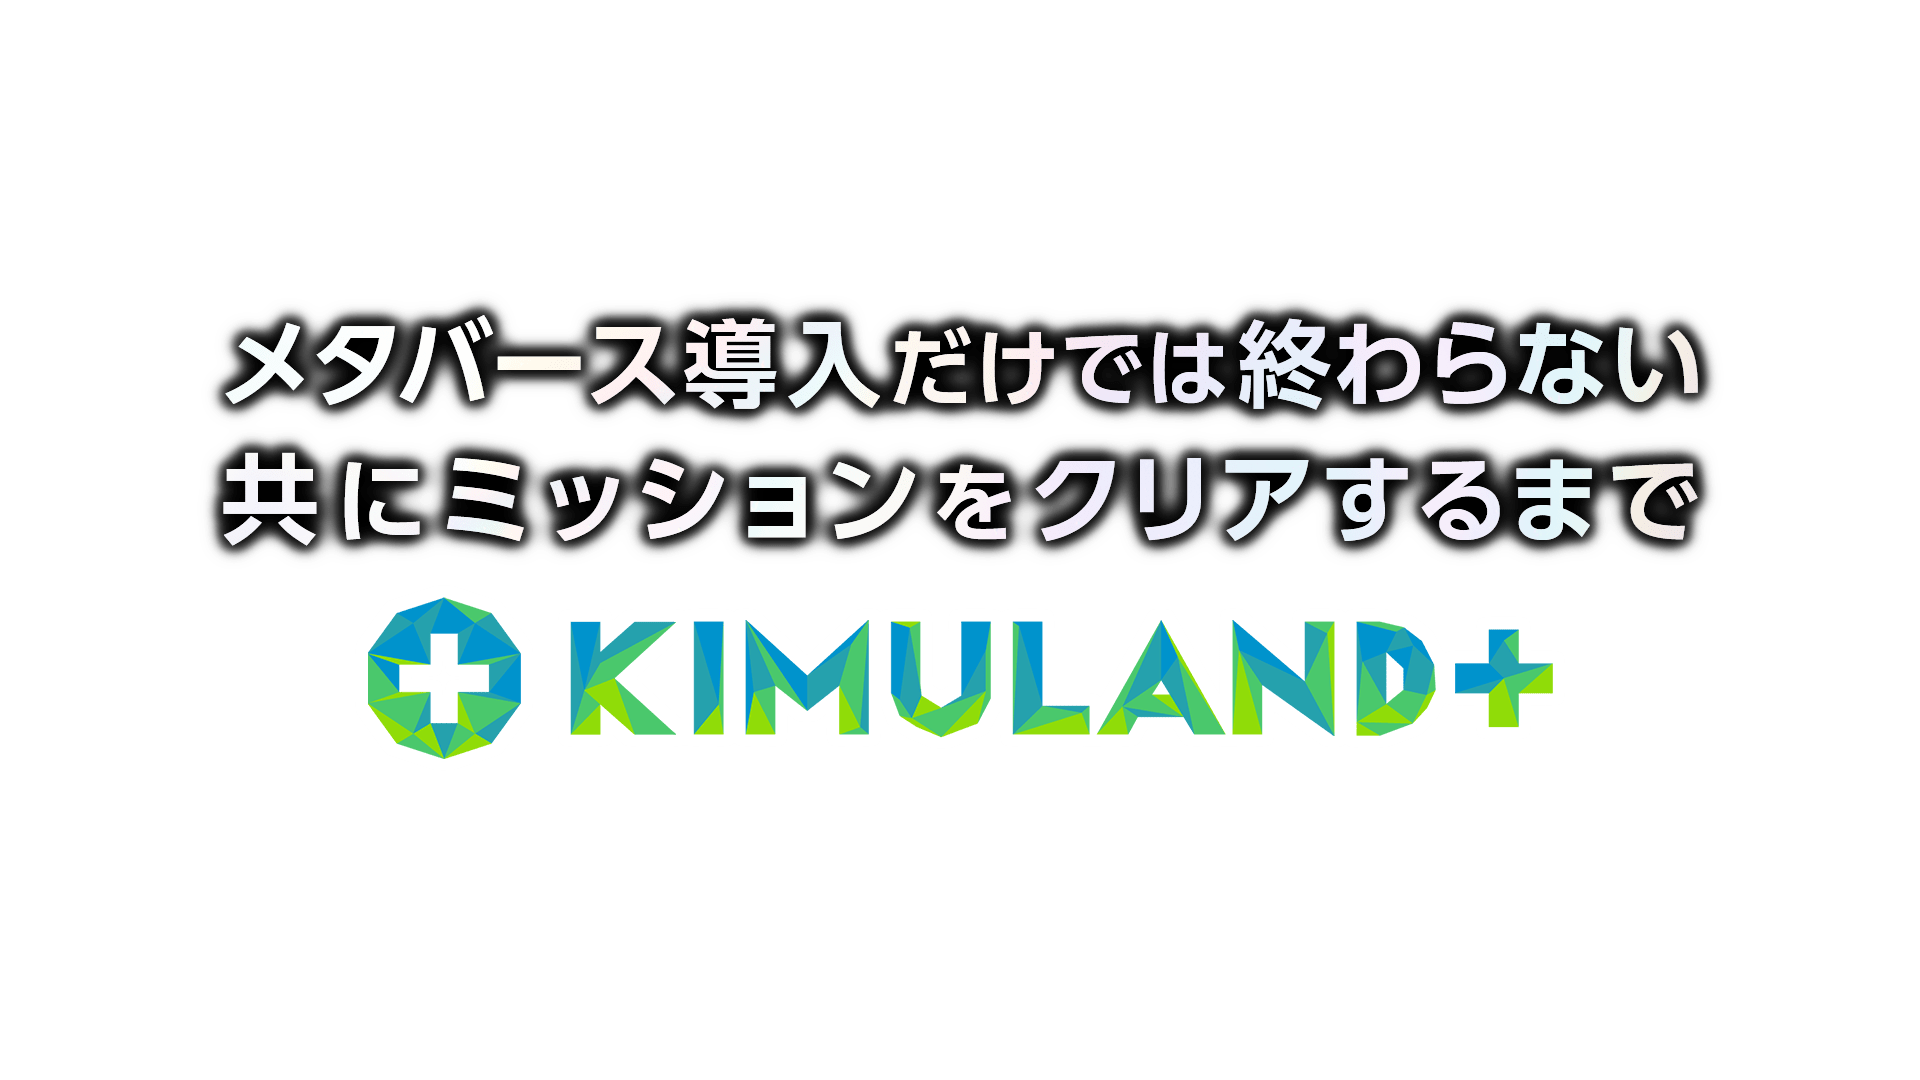 メタバース導入だけでは終わらない 共にミッションをクリアするまで KIMULAND+